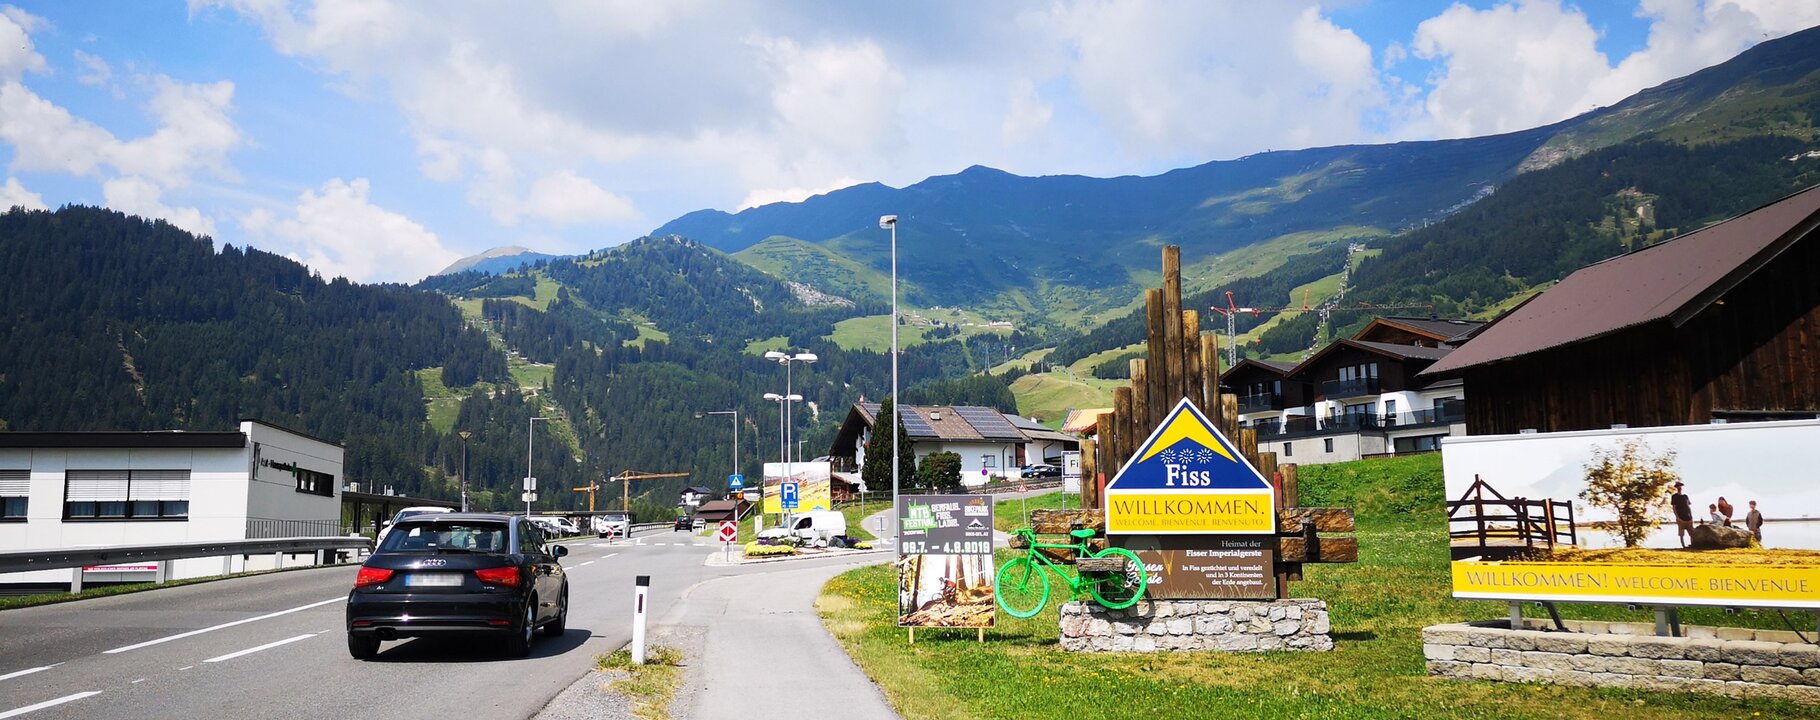 Anreise nach Serfaus-Fiss-Ladis in Tirol Österreich | © Serfaus-Fiss-Ladis